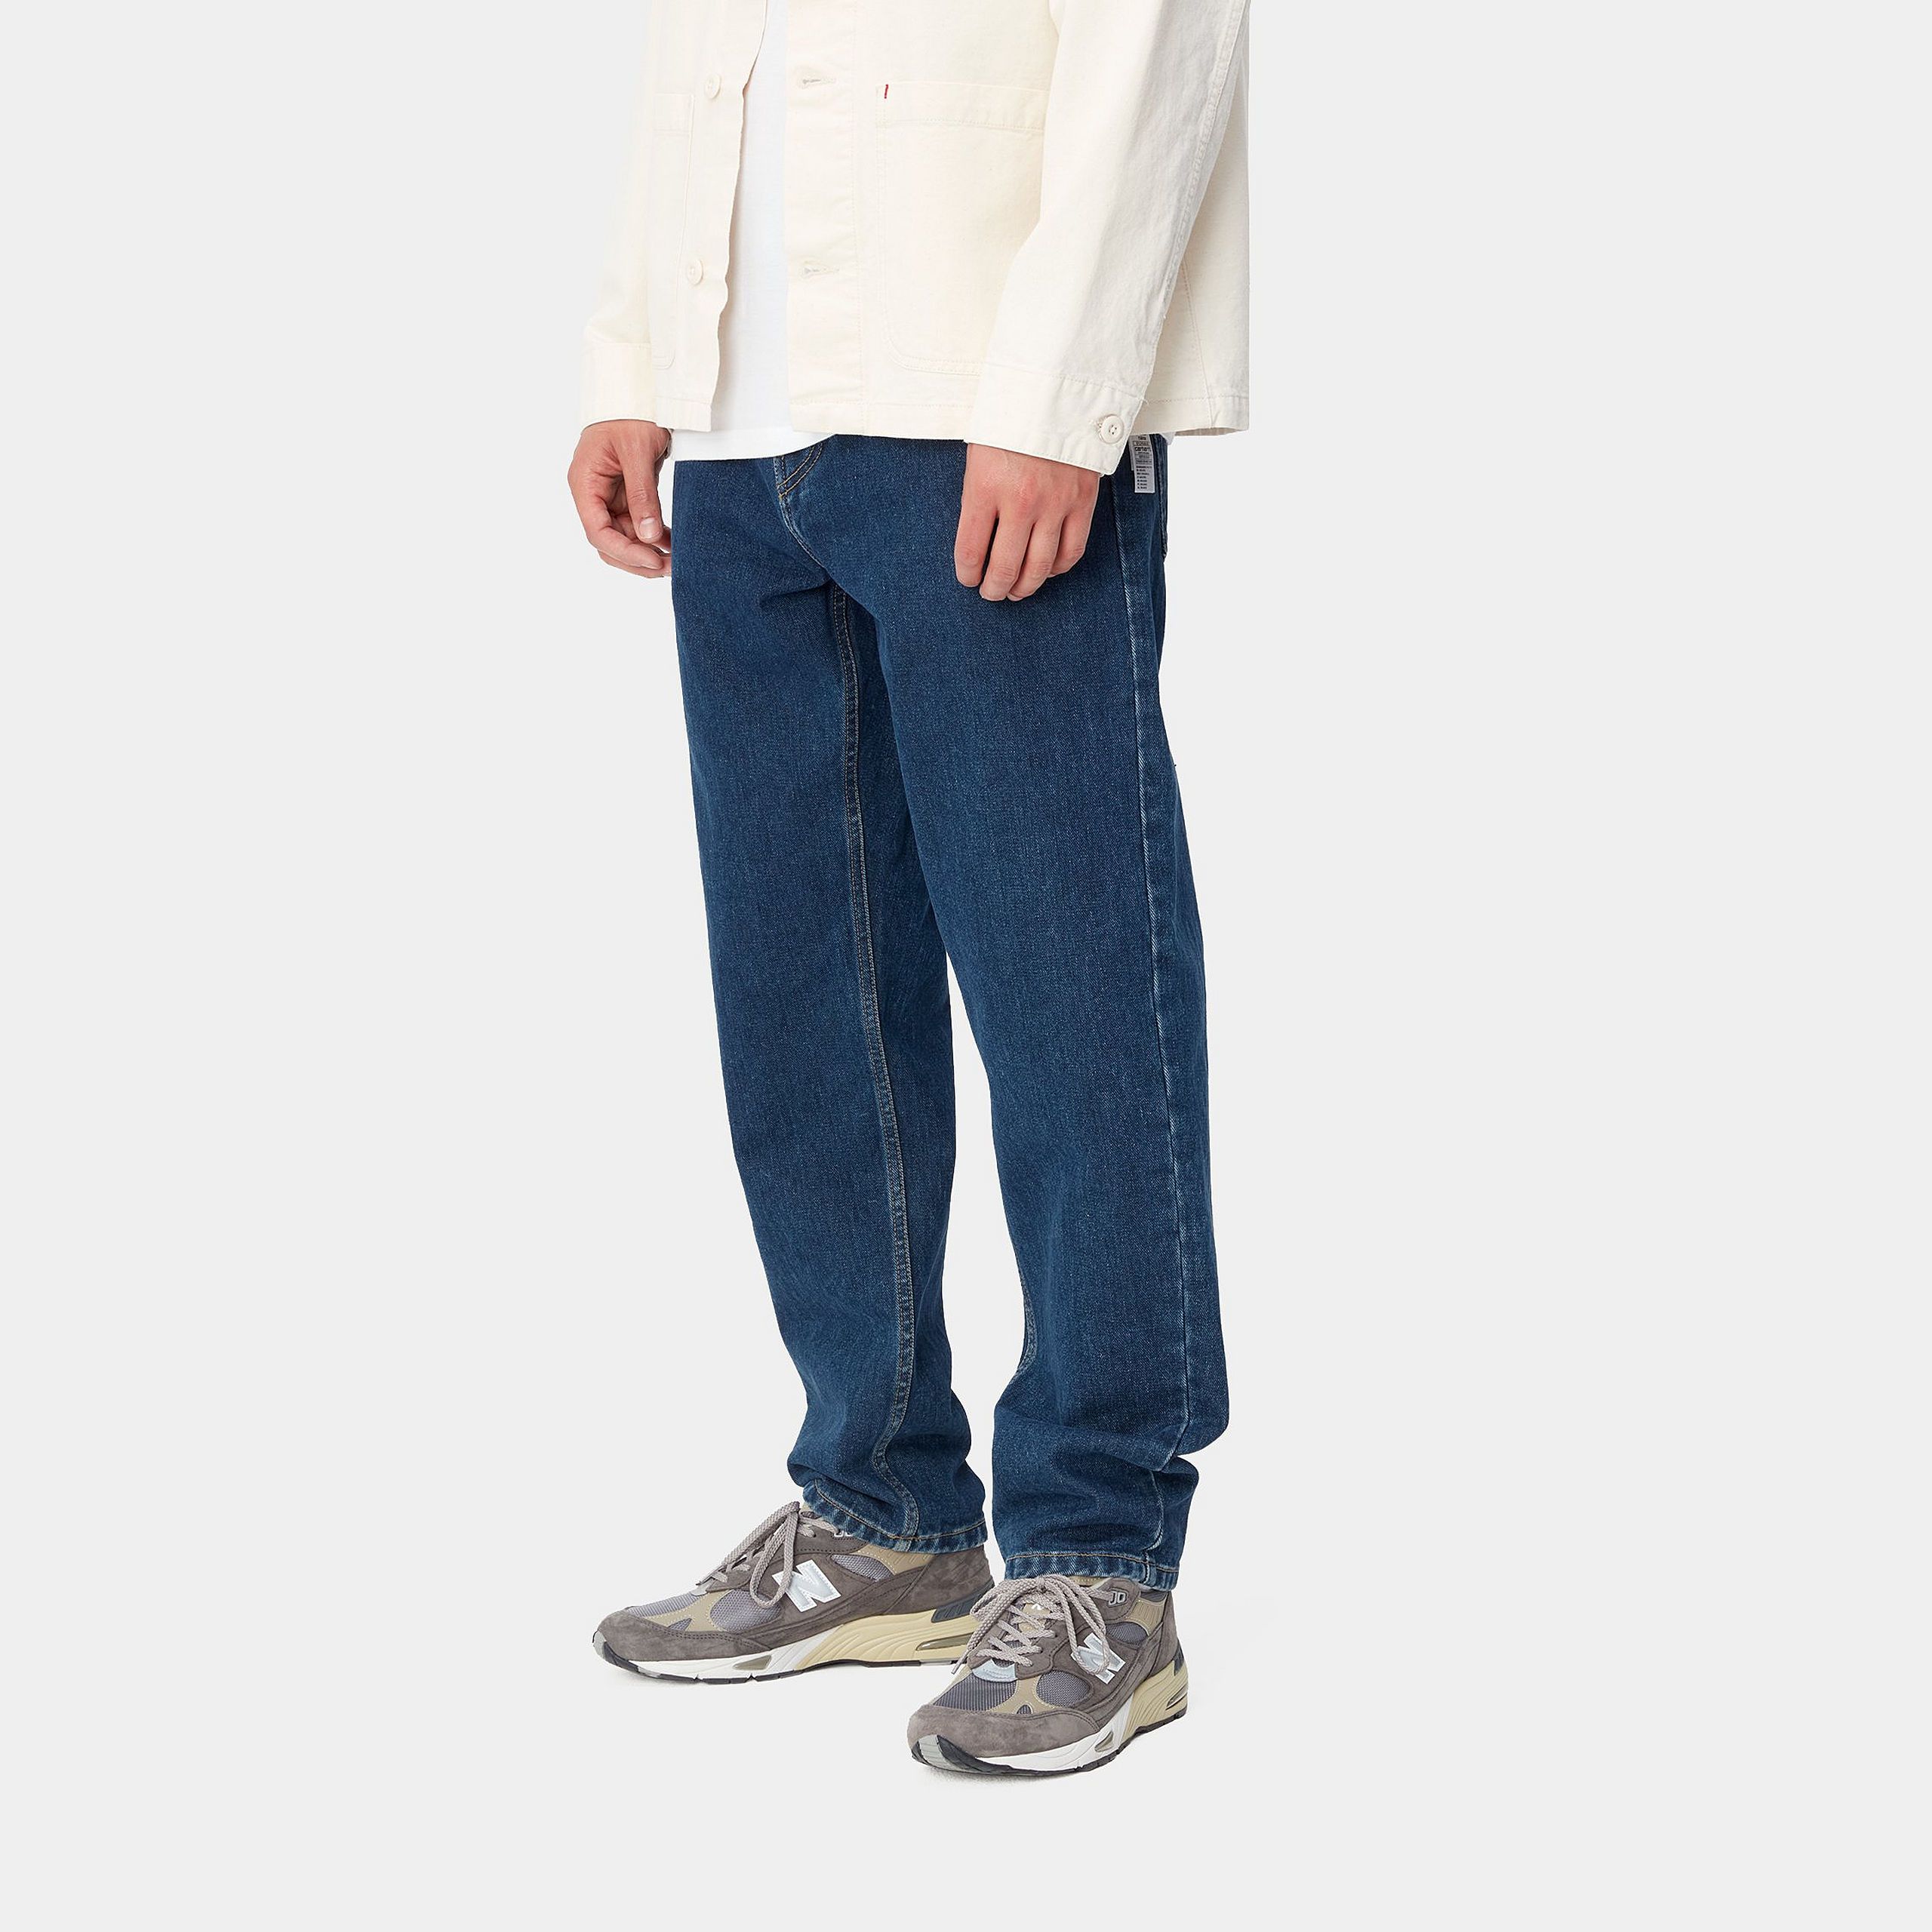 STAB | Carhartt WIP Newel Pant: Blue - Jeans